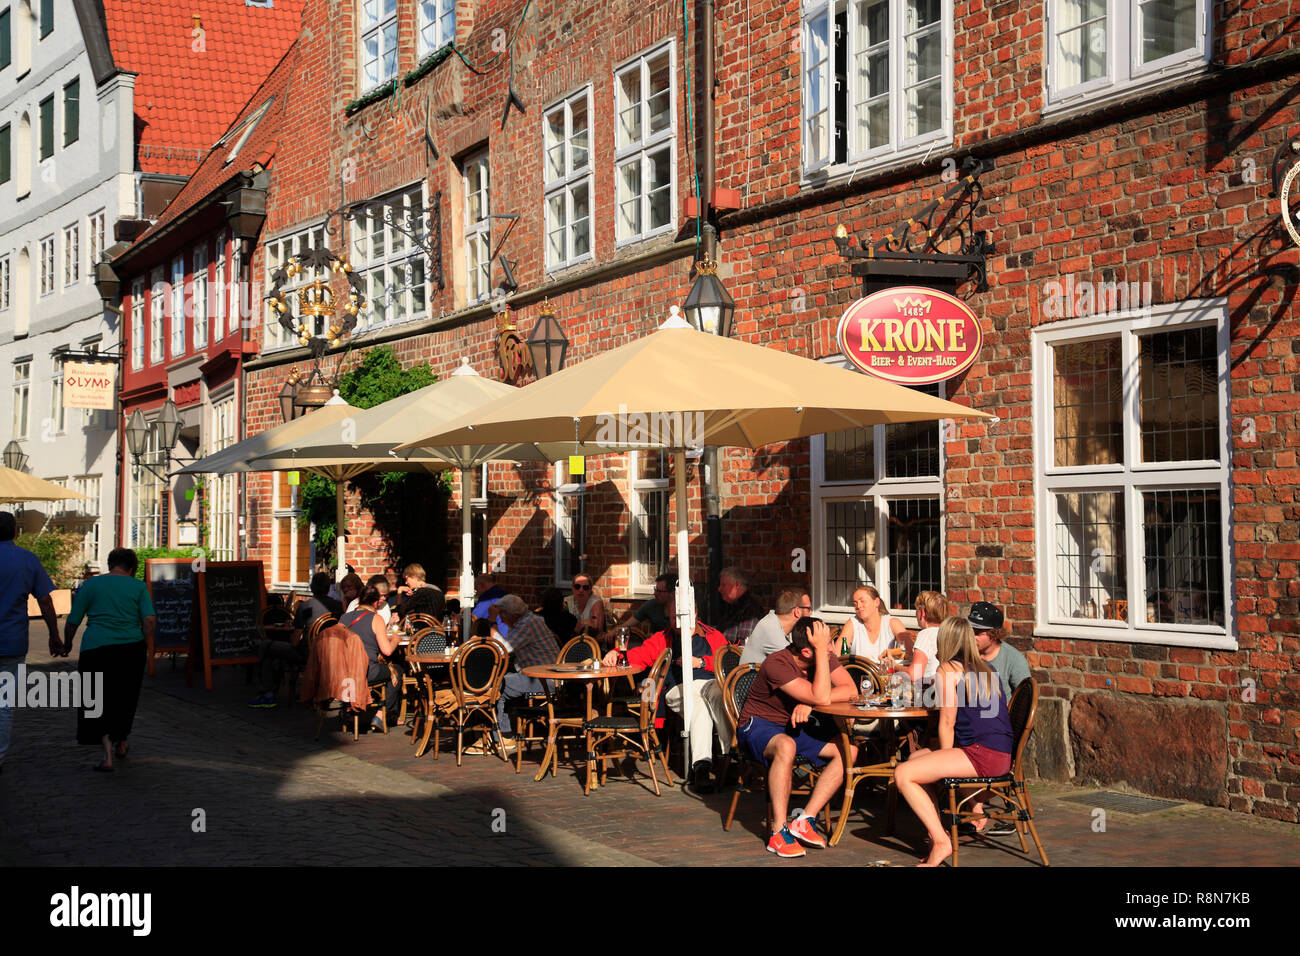 Restaurant zur KRONE, Heiligengeistsstrasse, Lüneburg, Lueneburg, Lower Saxony, Germany, Europe Stock Photo